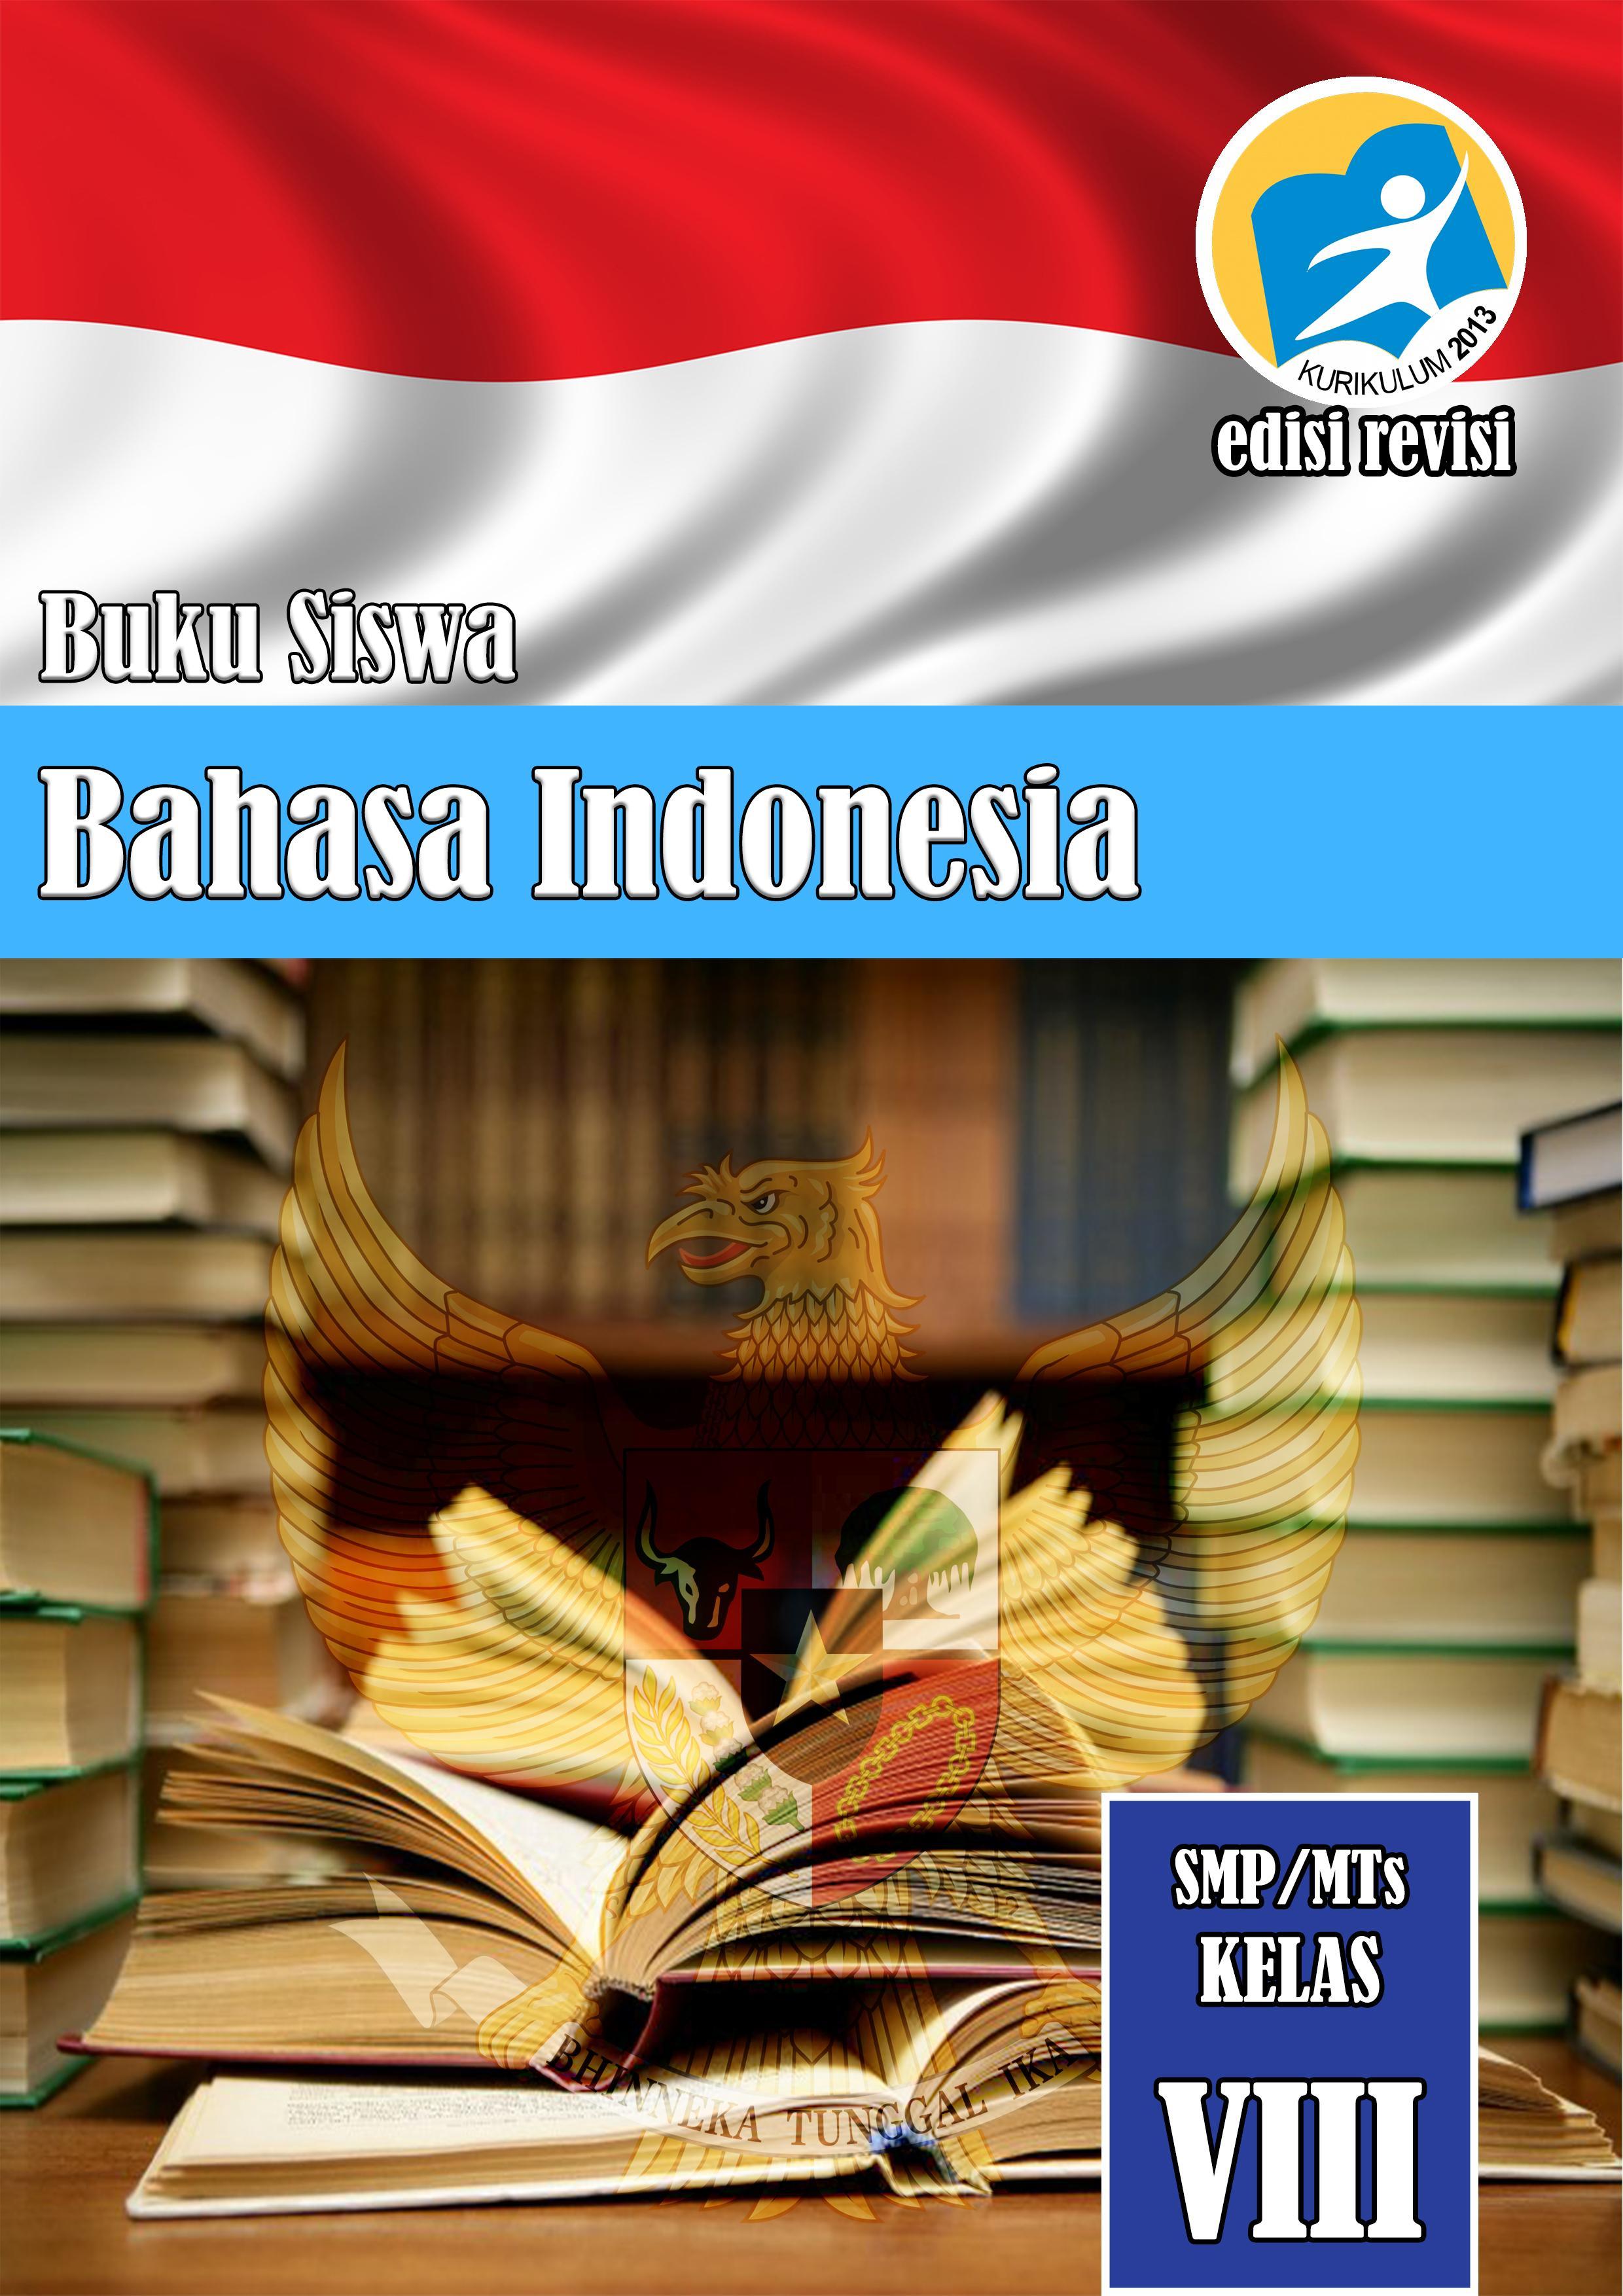 Buku Bahasa Indonesia untuk Siswa Kelas VIII poster